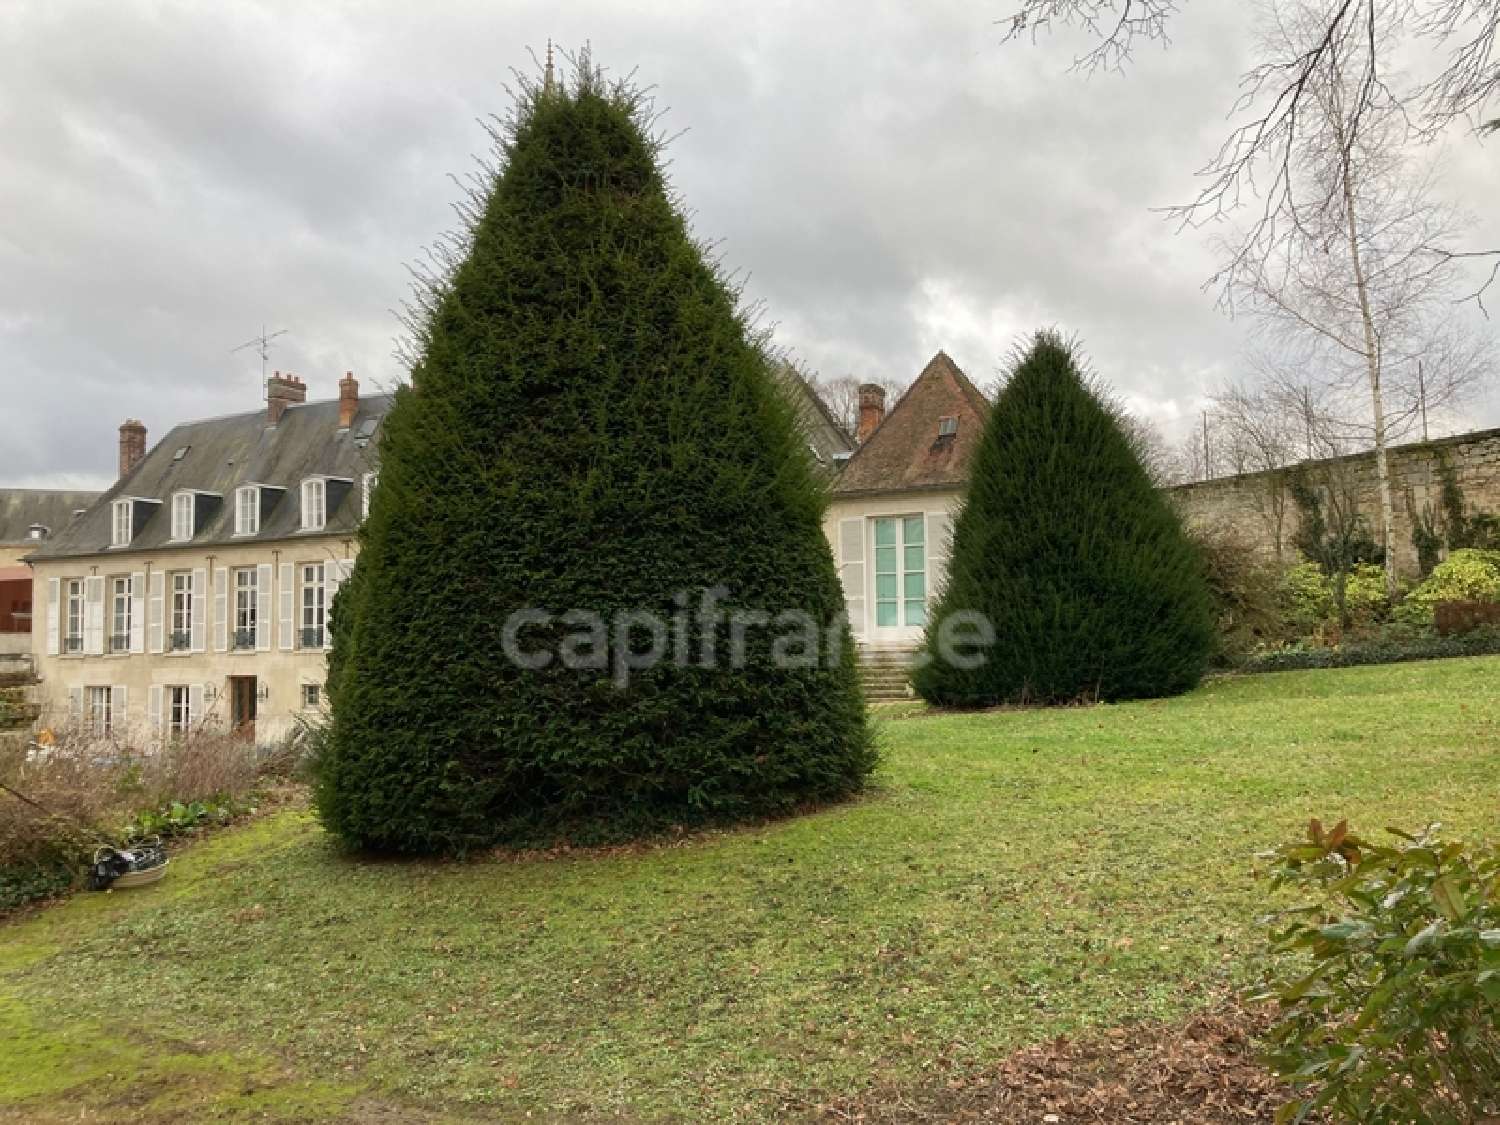  à vendre maison bourgeoise Soissons Aisne 2